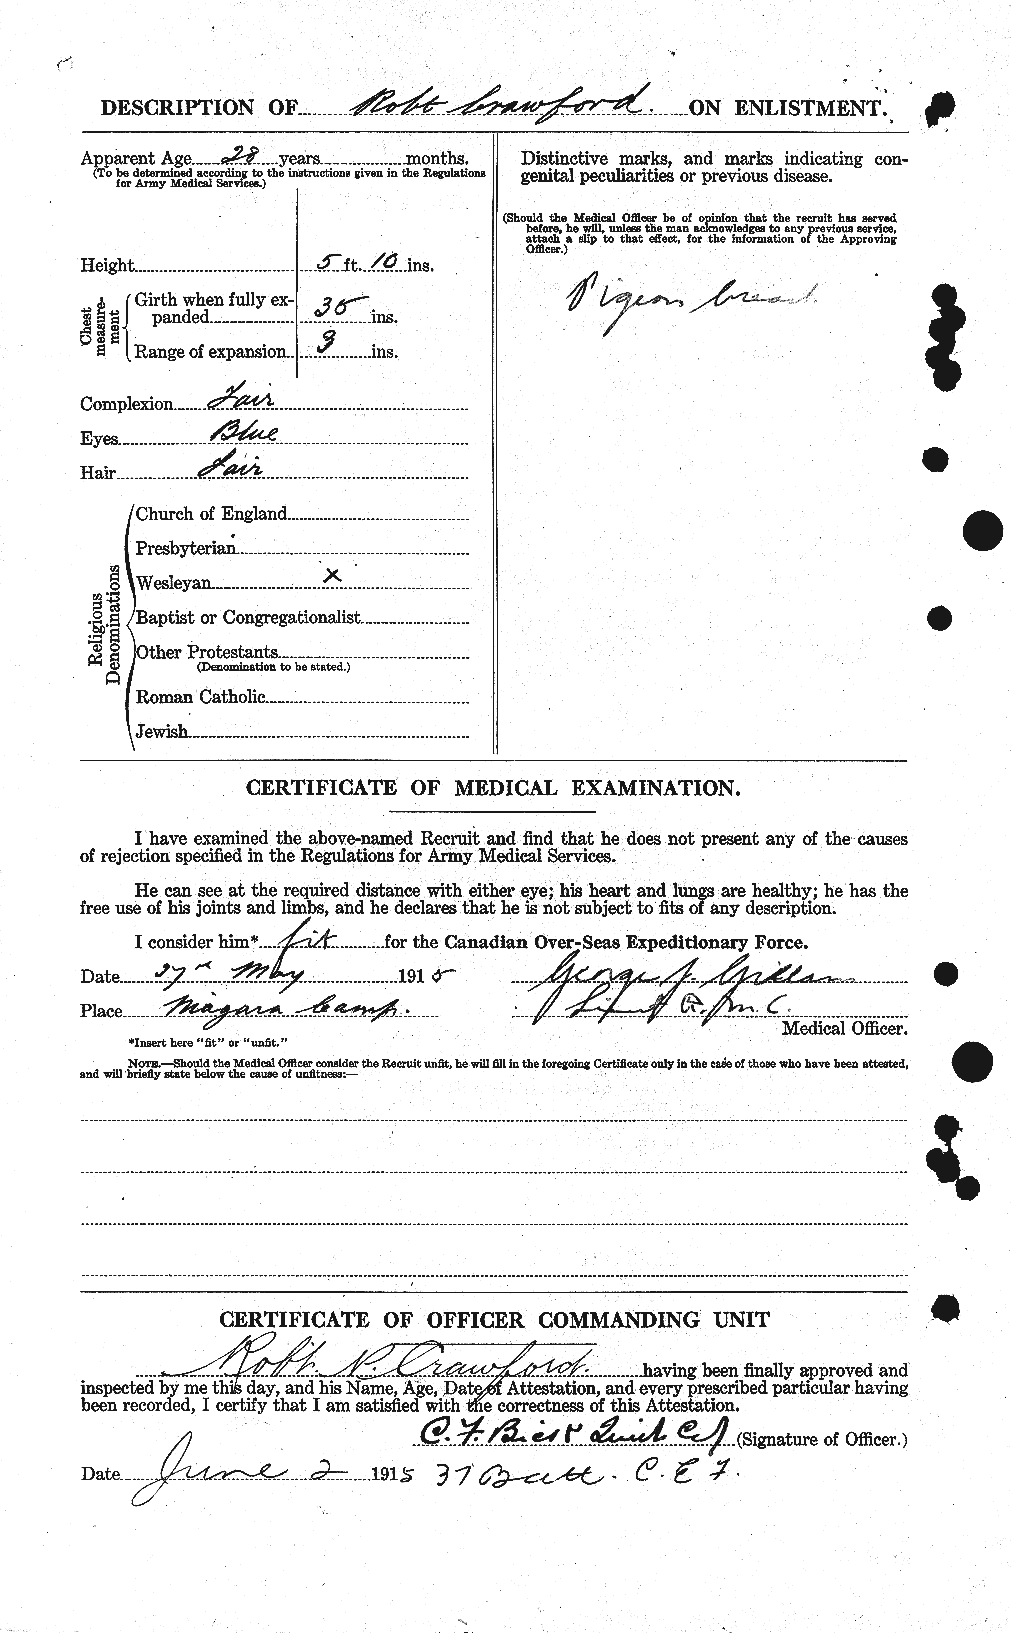 Dossiers du Personnel de la Première Guerre mondiale - CEC 061396b